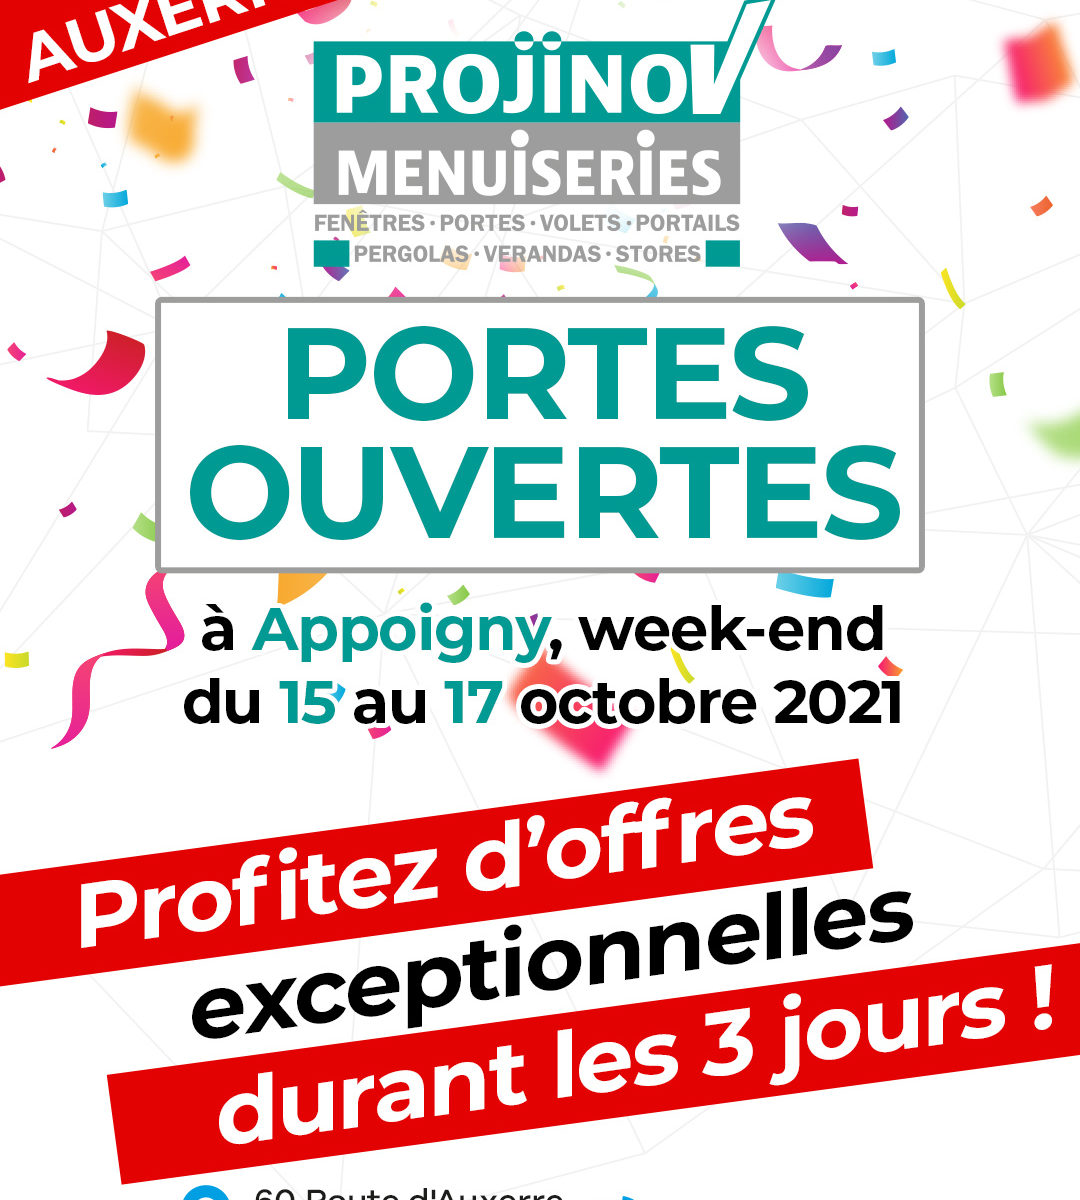 portes ouvertes à Auxerre de projinov menuiseries du 15 au 17 octobre 2021